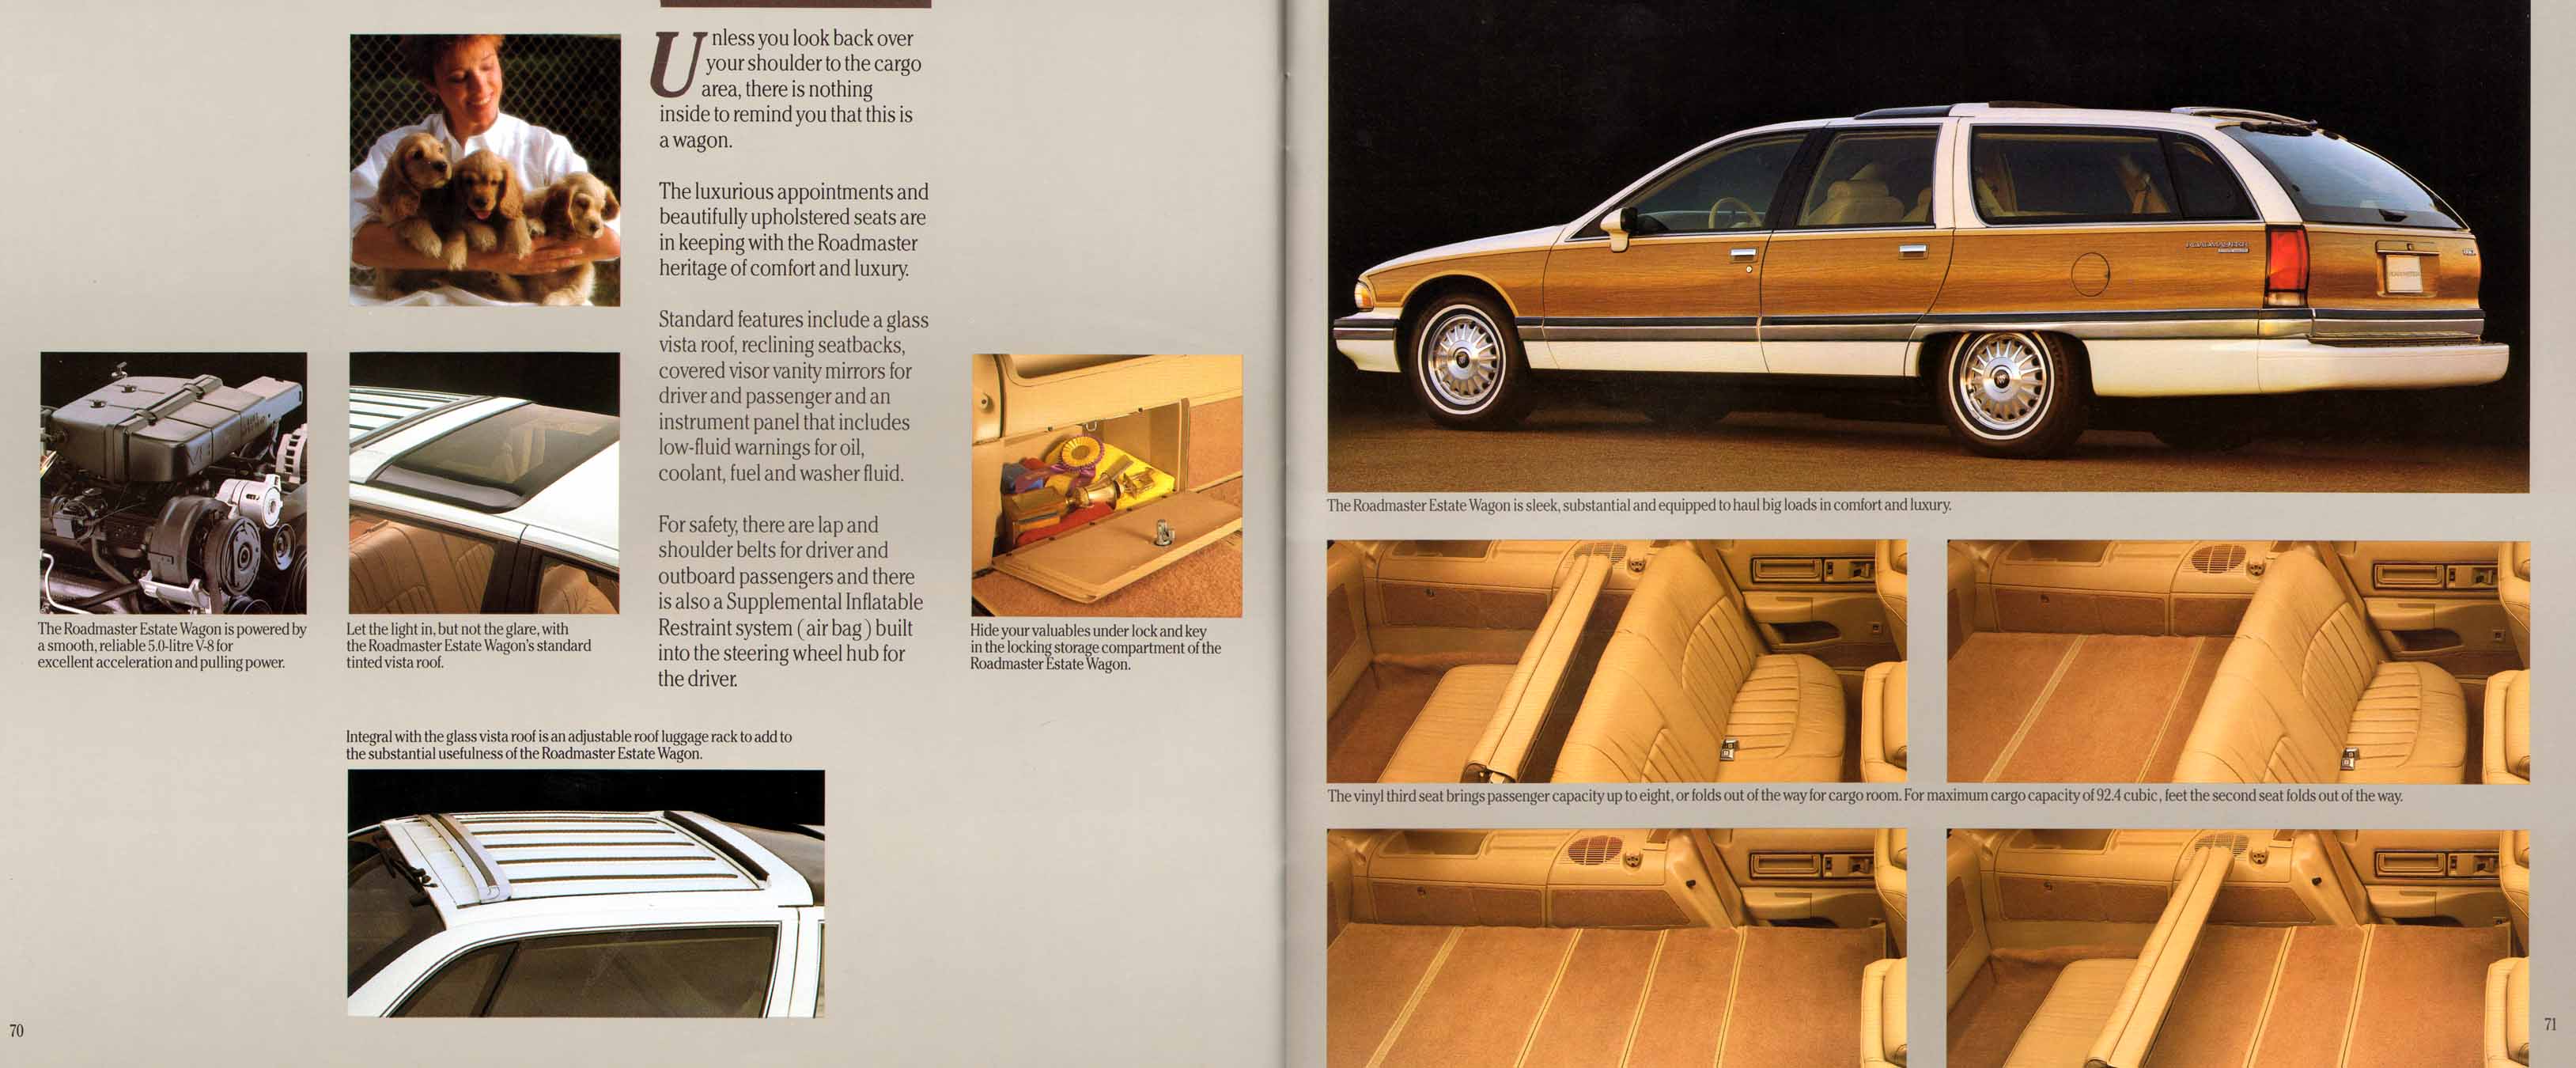 1991 Buick Full Line Prestige-72-73